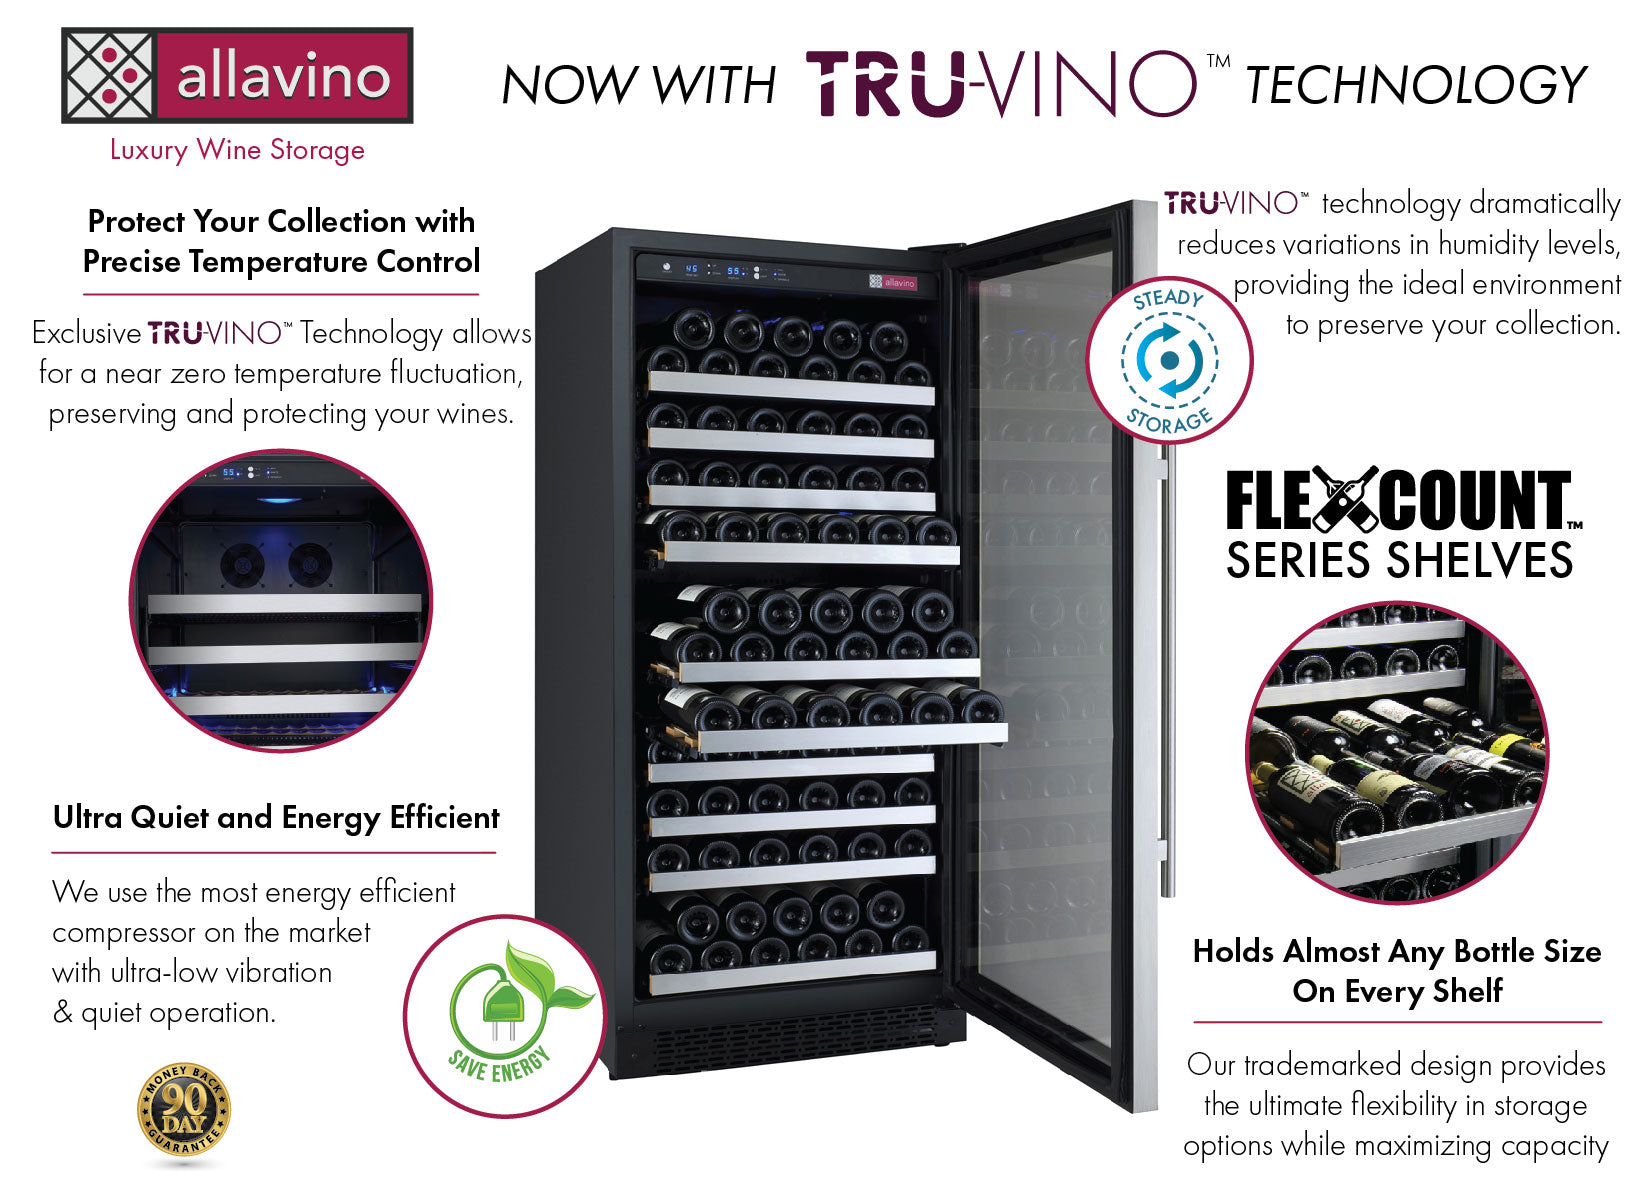 47" Wide FlexCount II Tru-Vino 256 Bottle Dual Zone Stainless Steel Side-by-Side Wine Refrigerator